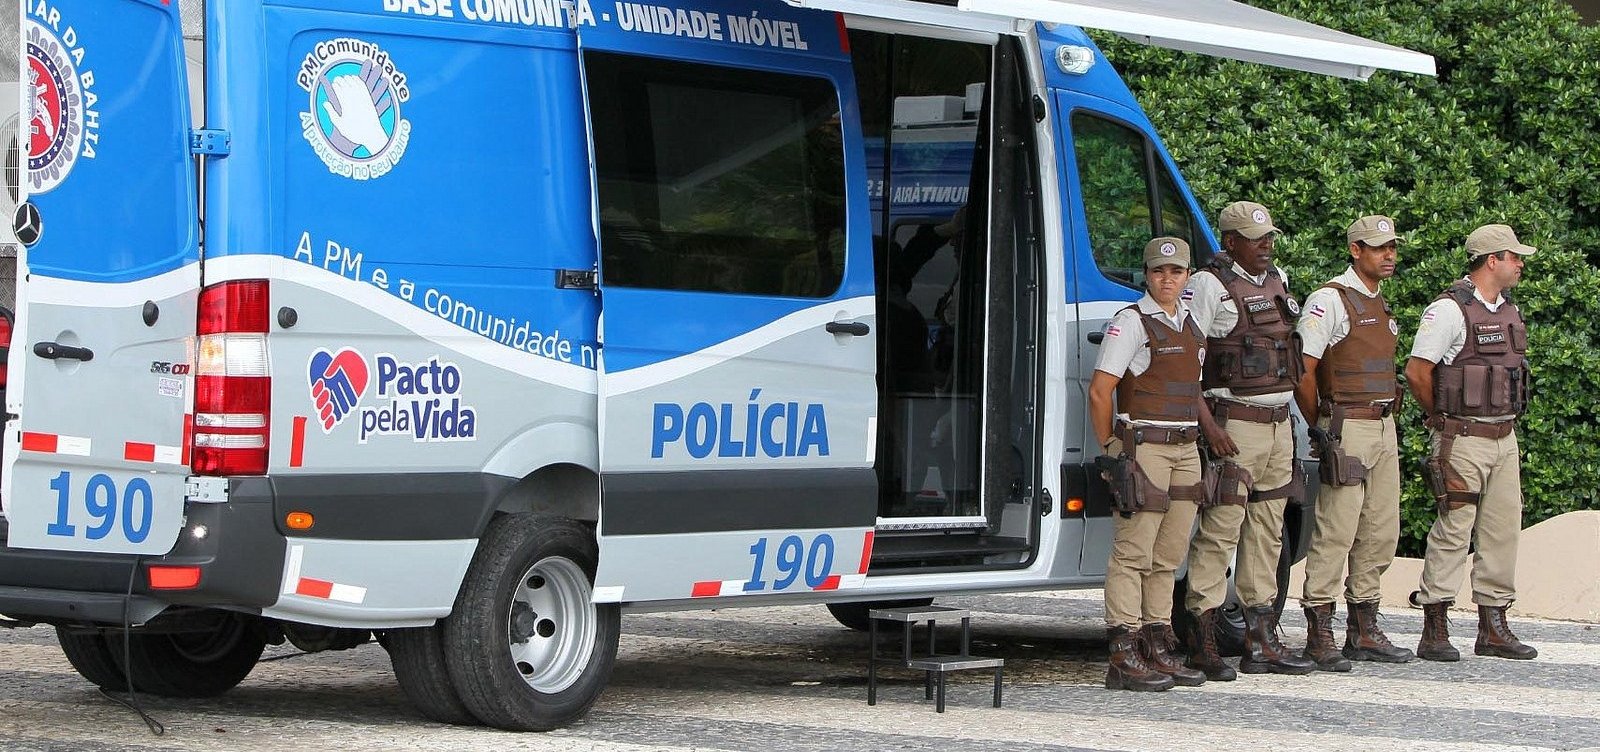 Policiais baianos vão receber R$ 35,5 milhões por redução de mortes